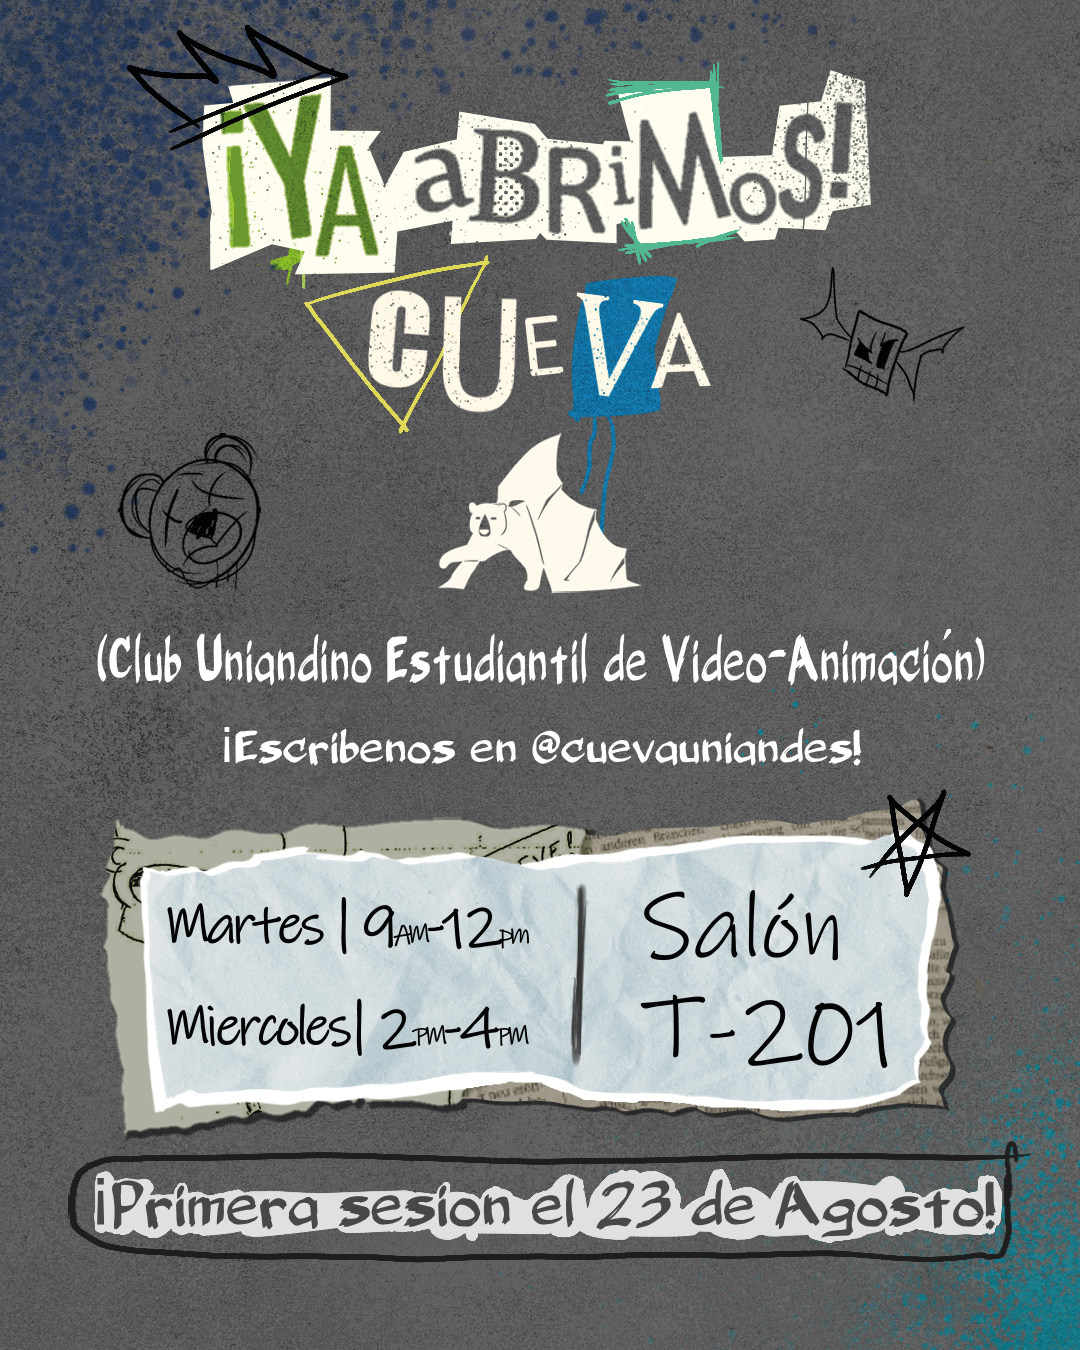 Convocatoria: Club uniandino estudiantil de video-animación | Cueva